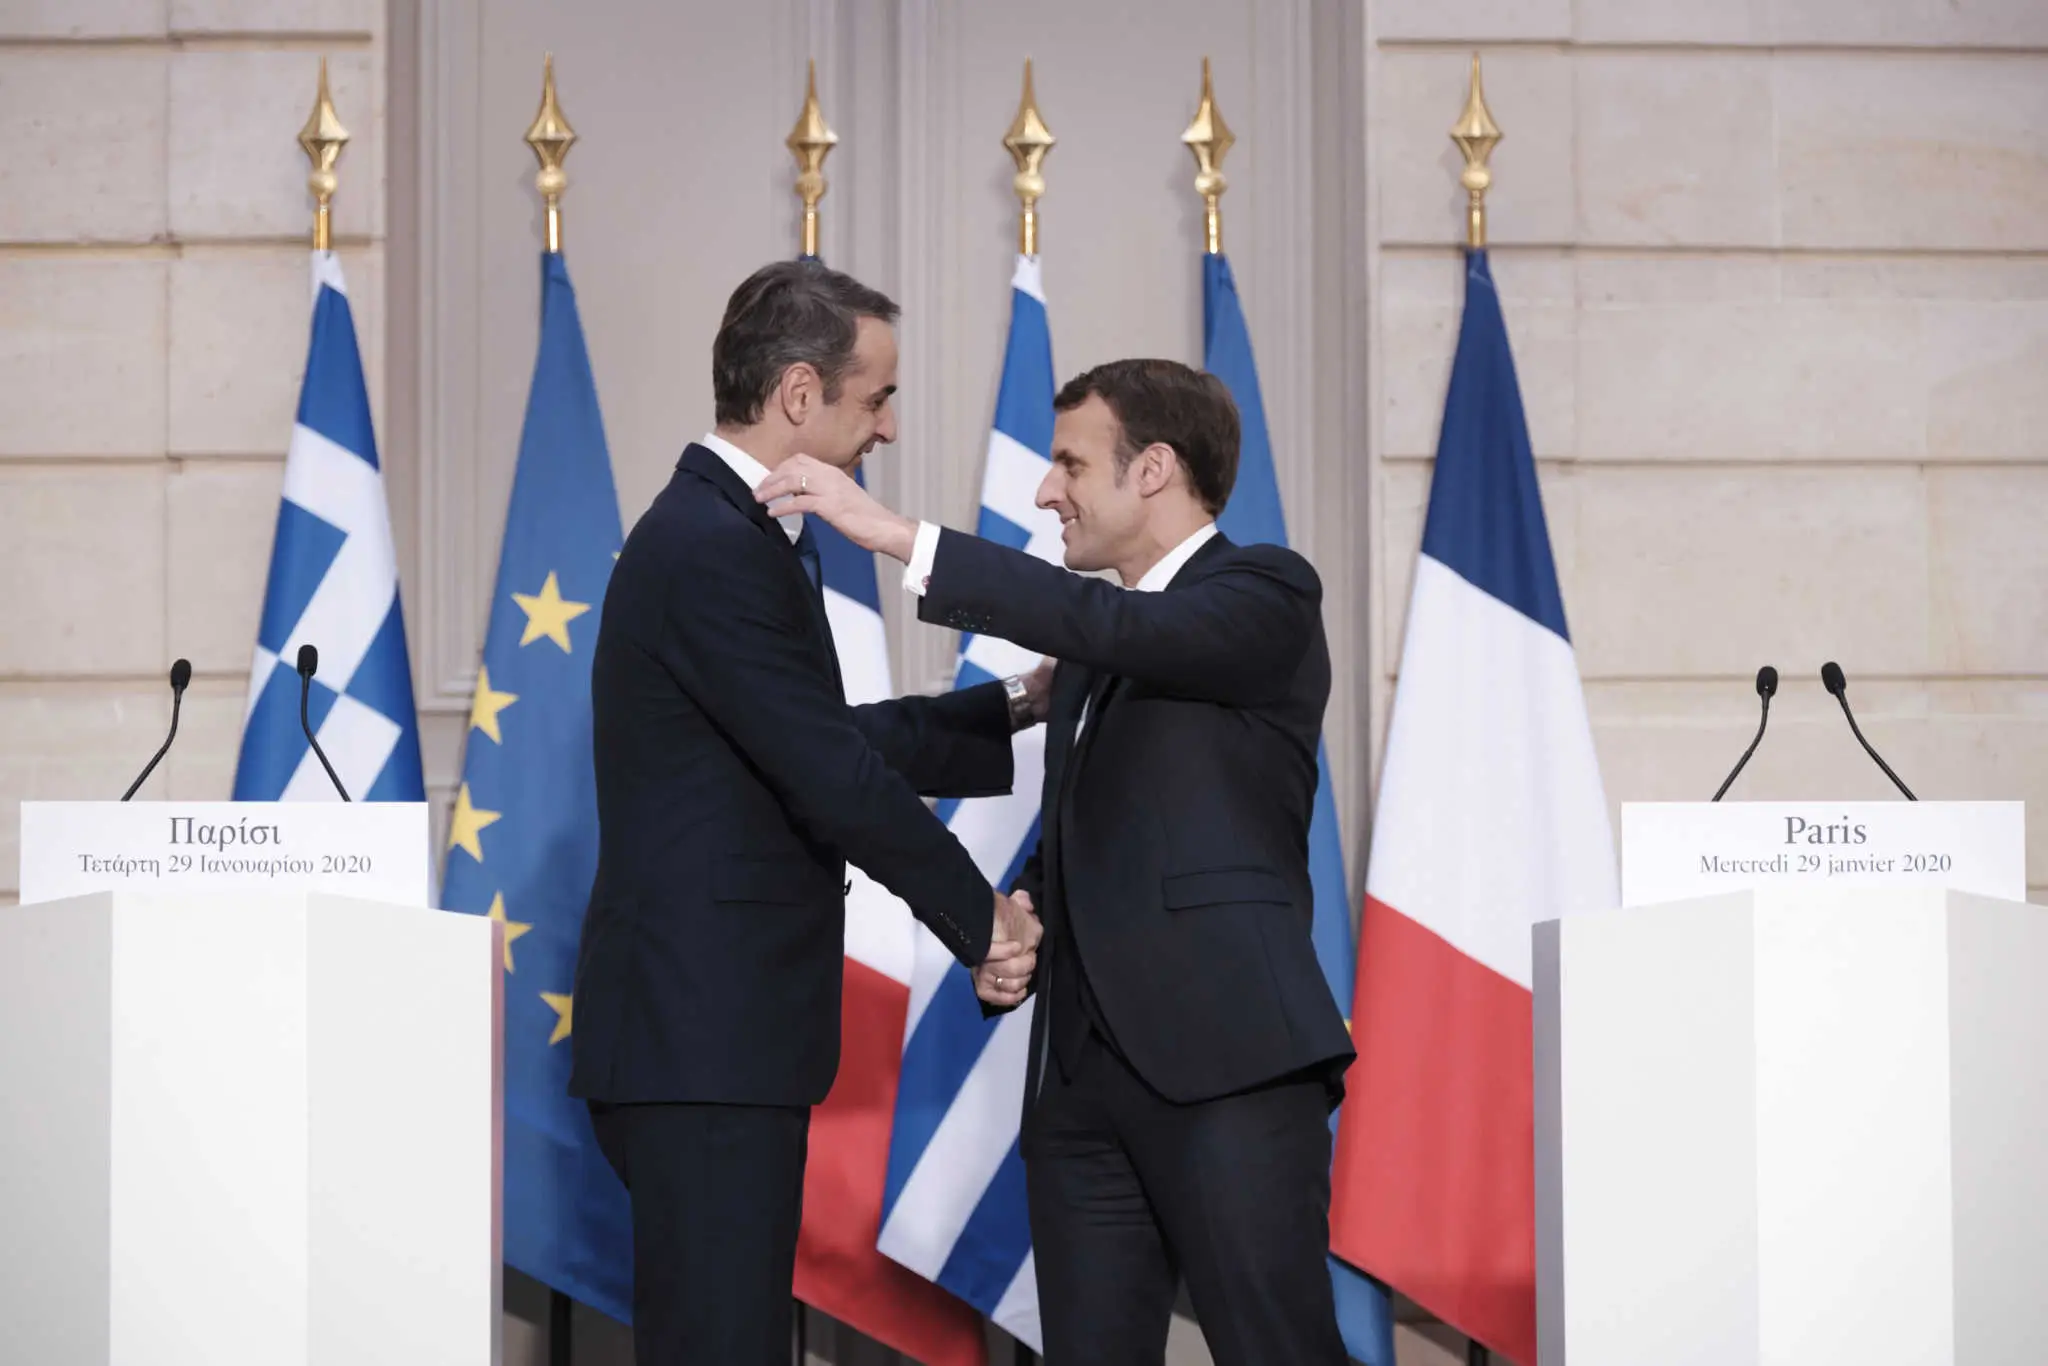 , Ελλάς-Γαλλία… συμμαχία και στα εξοπλιστικά – Νέο κάλεσμα στην Τουρκία να εγκαταλείψει τις προκλήσεις